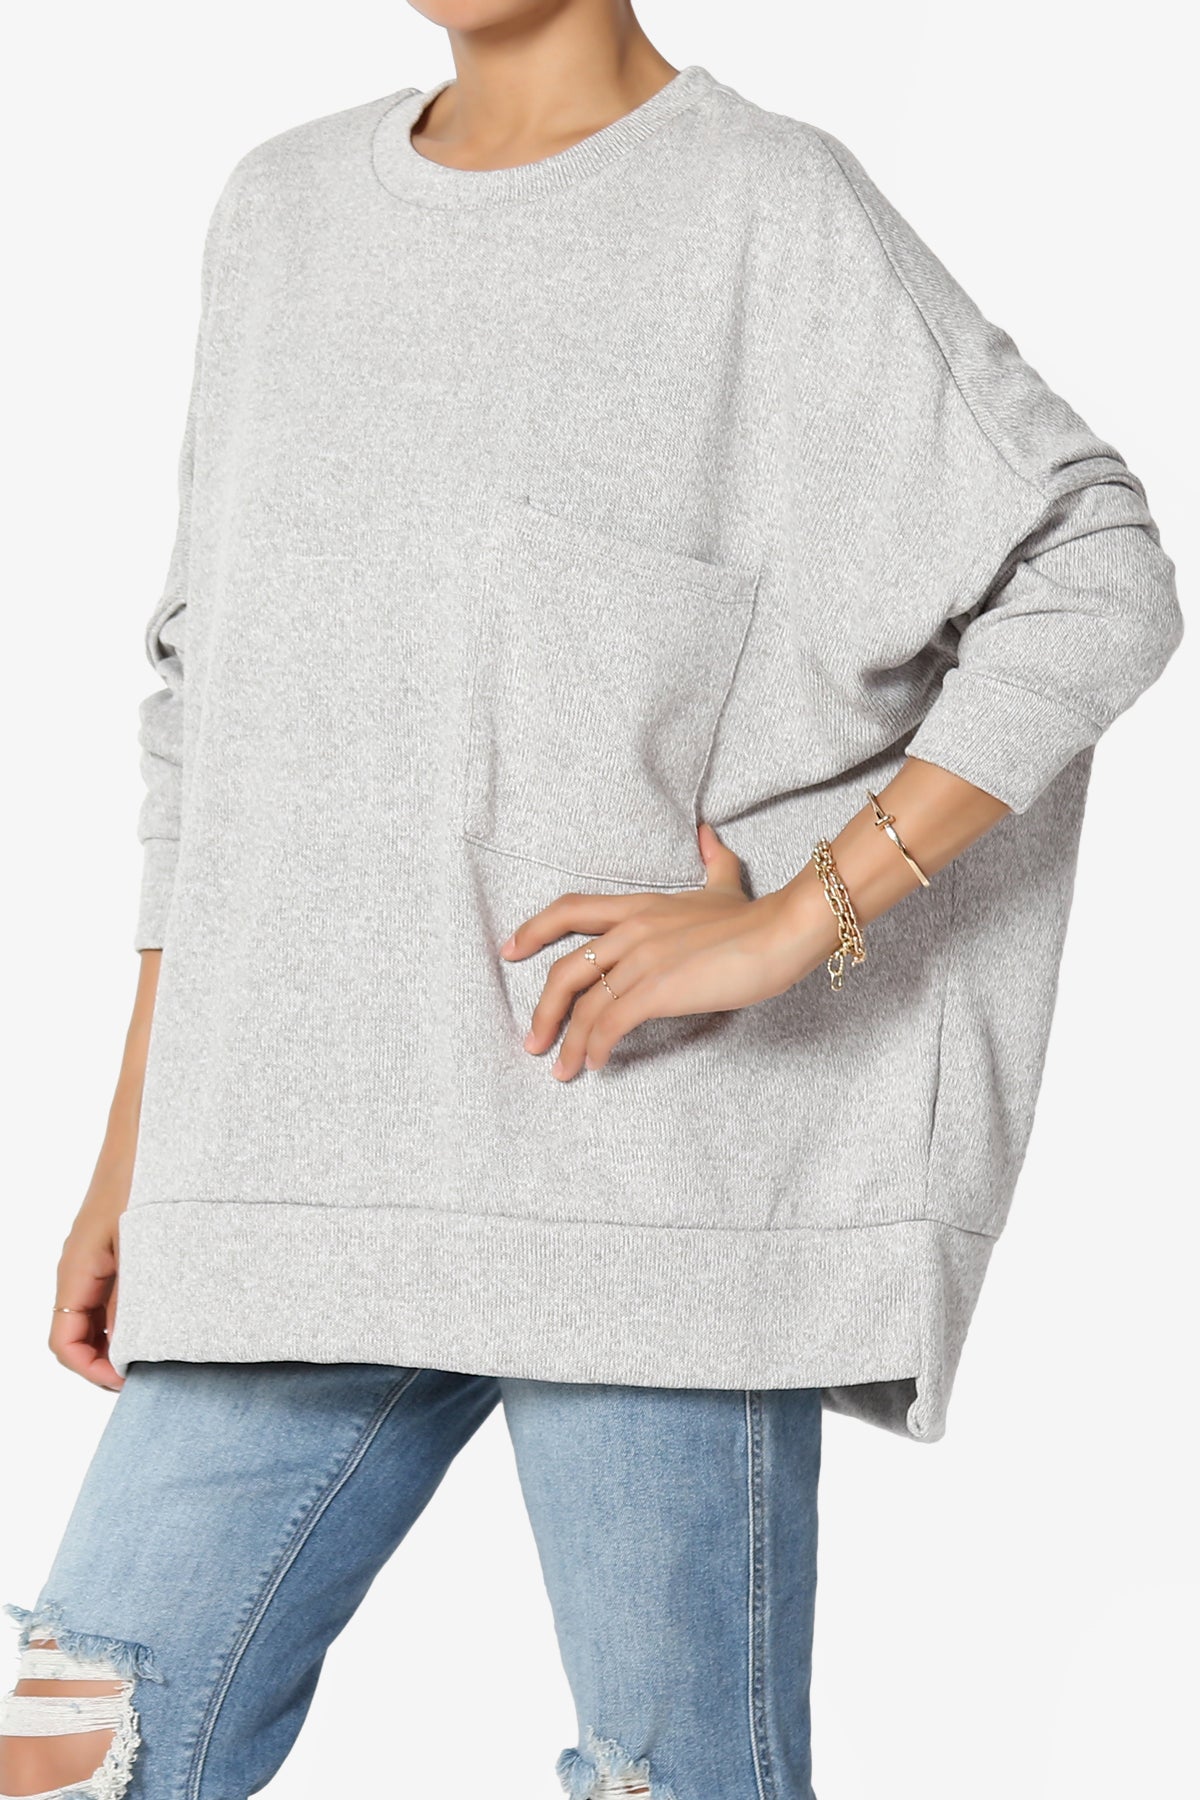 Forge Melange Knit Hi-Low Pocket Sweater PLUS